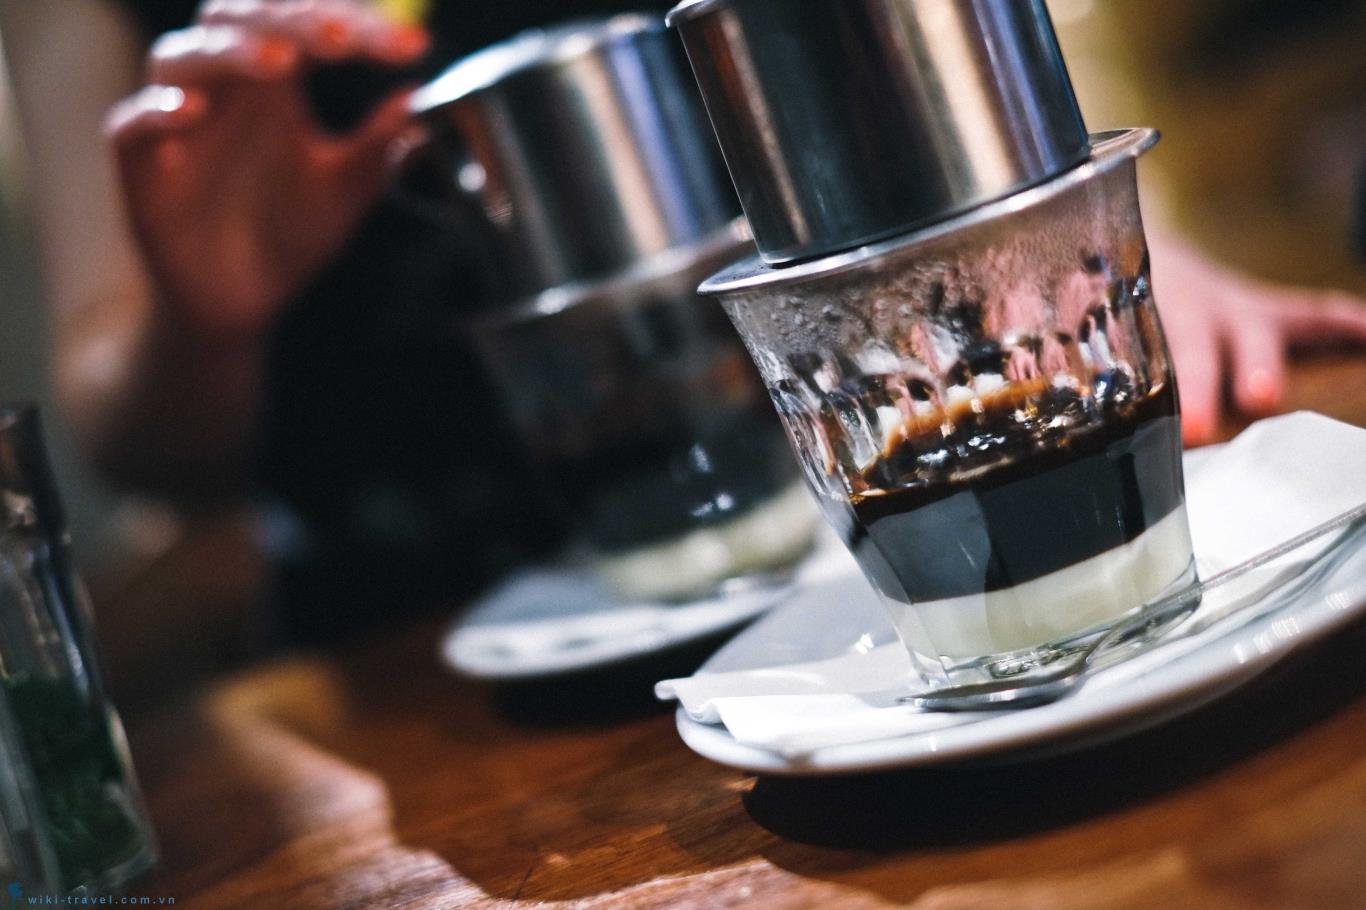 Bạn sẽ cảm thấy hương vị của quê hương xưa khi nhìn vào ảnh ly cà phê phin đúng chuẩn. Những hạt cà phê rang xay lúa thó, nhấp vào một chút côn trùng, và kiêng kị đối với đường, bạn sẽ được trải nghiệm hương vị cà phê đúng chuẩn một cách tuyệt vời.